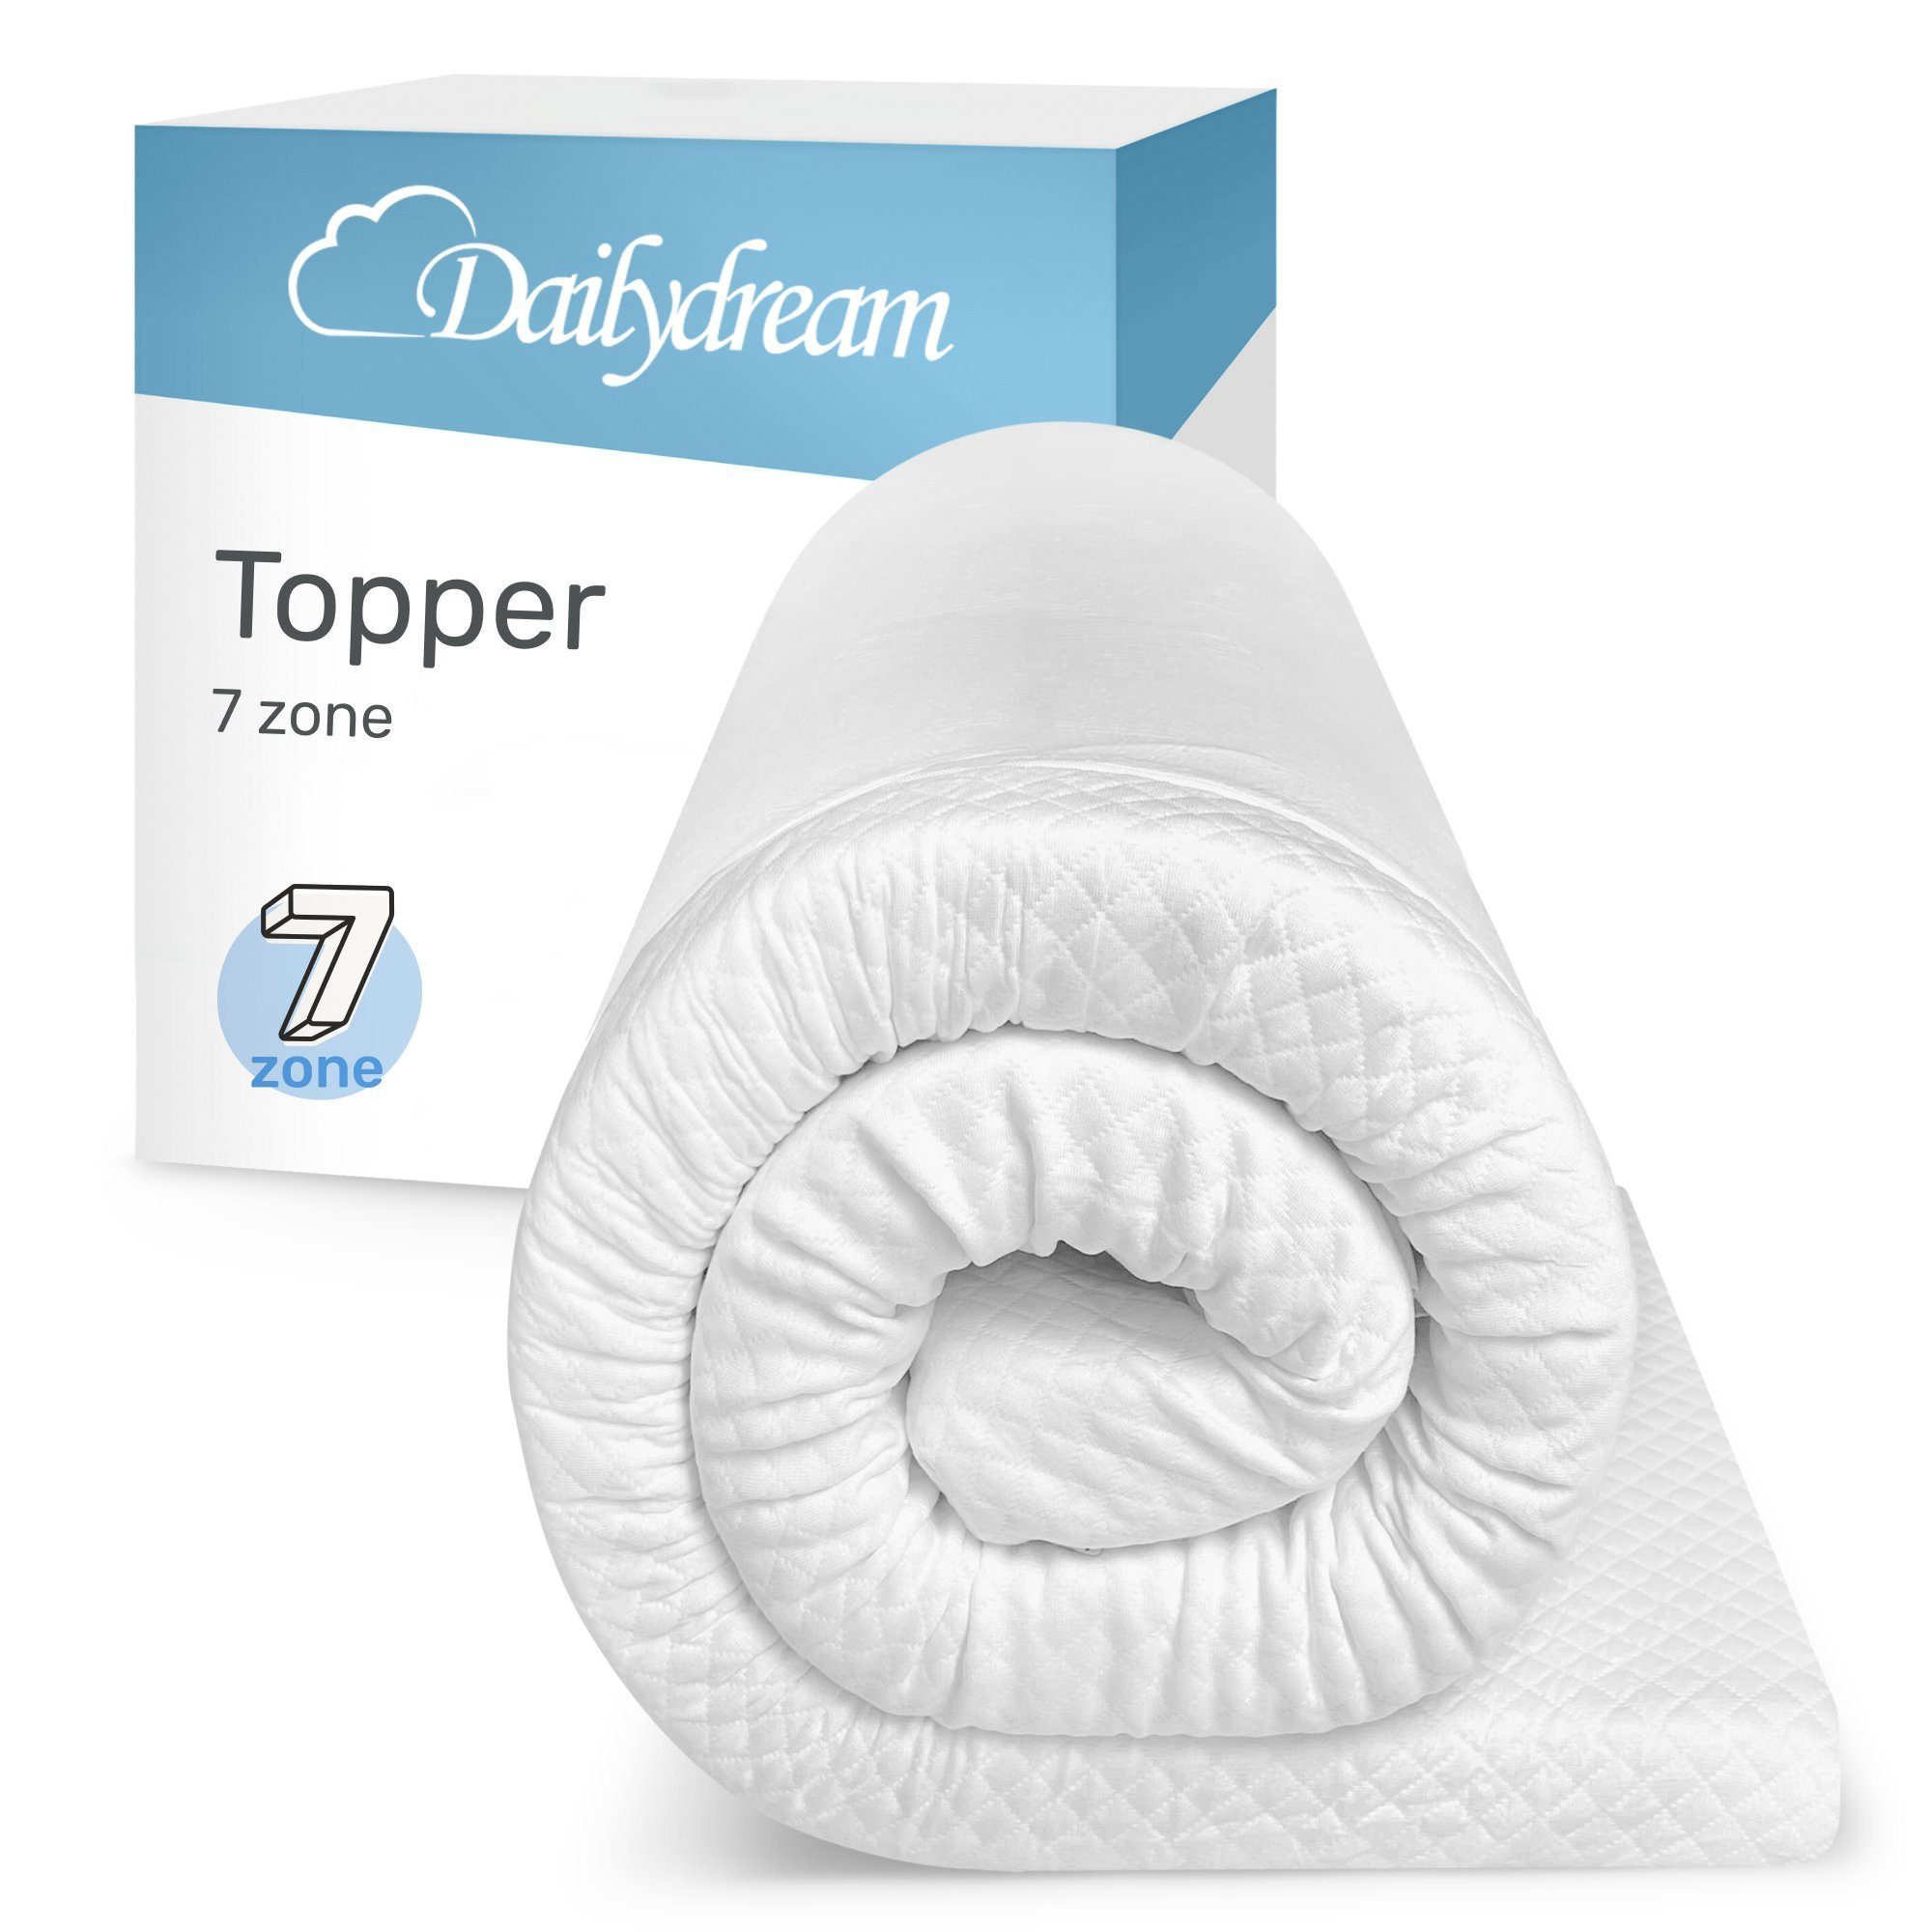 Topper Model "7 Zone" aus Komfortschaum und 7 Liegezonen von, Dailydream, 5 cm hoch, mit 7-Zonen Kern schafft die ideale Schlafposition